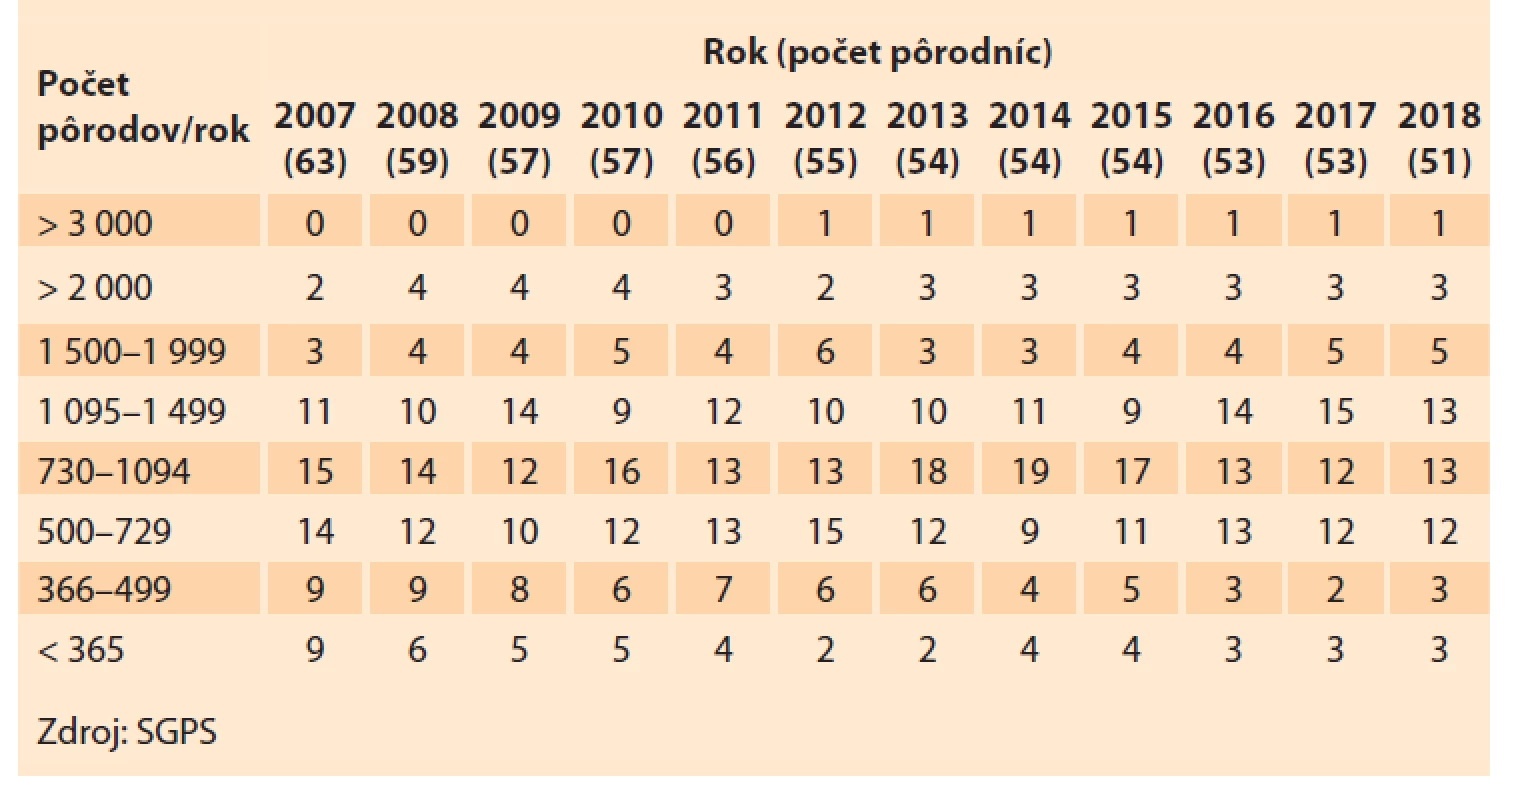 Pôrodnice a počty pôrodov v Slovenskej republike v rokoch 2007–2018.<br>
Tab. 1. Maternity hospitals and numbers of births in the Slovak Republic in
2007–2018.